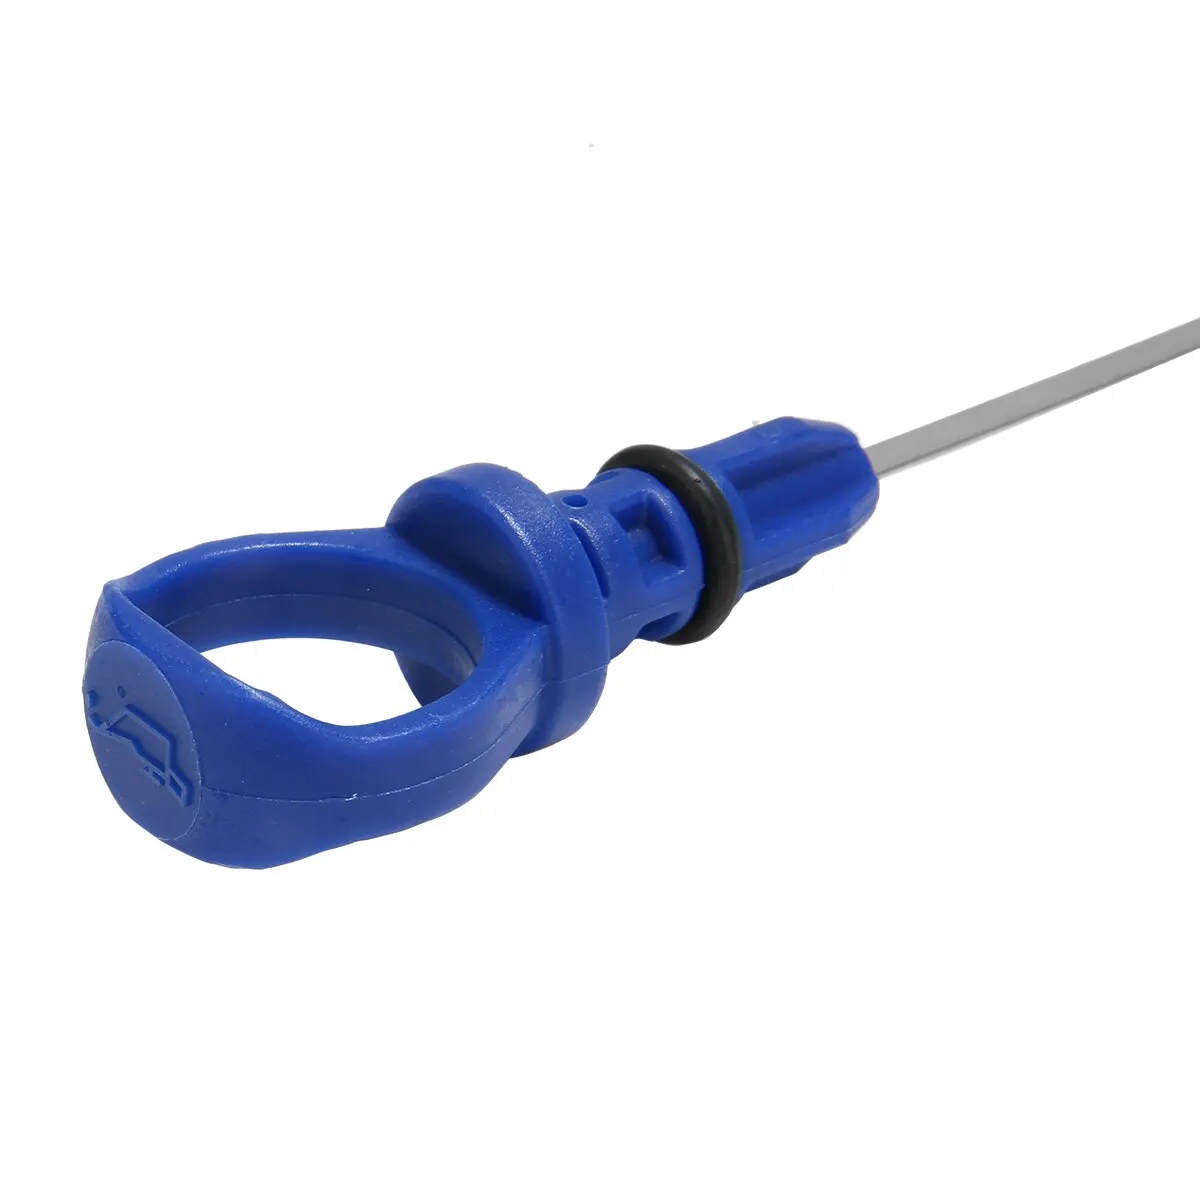 Mayitr 1pc 560mm/ 22.05” Blue Plastic Engine Oil Dip Stick Dipstick Measure For Citroen For Peugeot 206 306 307 406 607